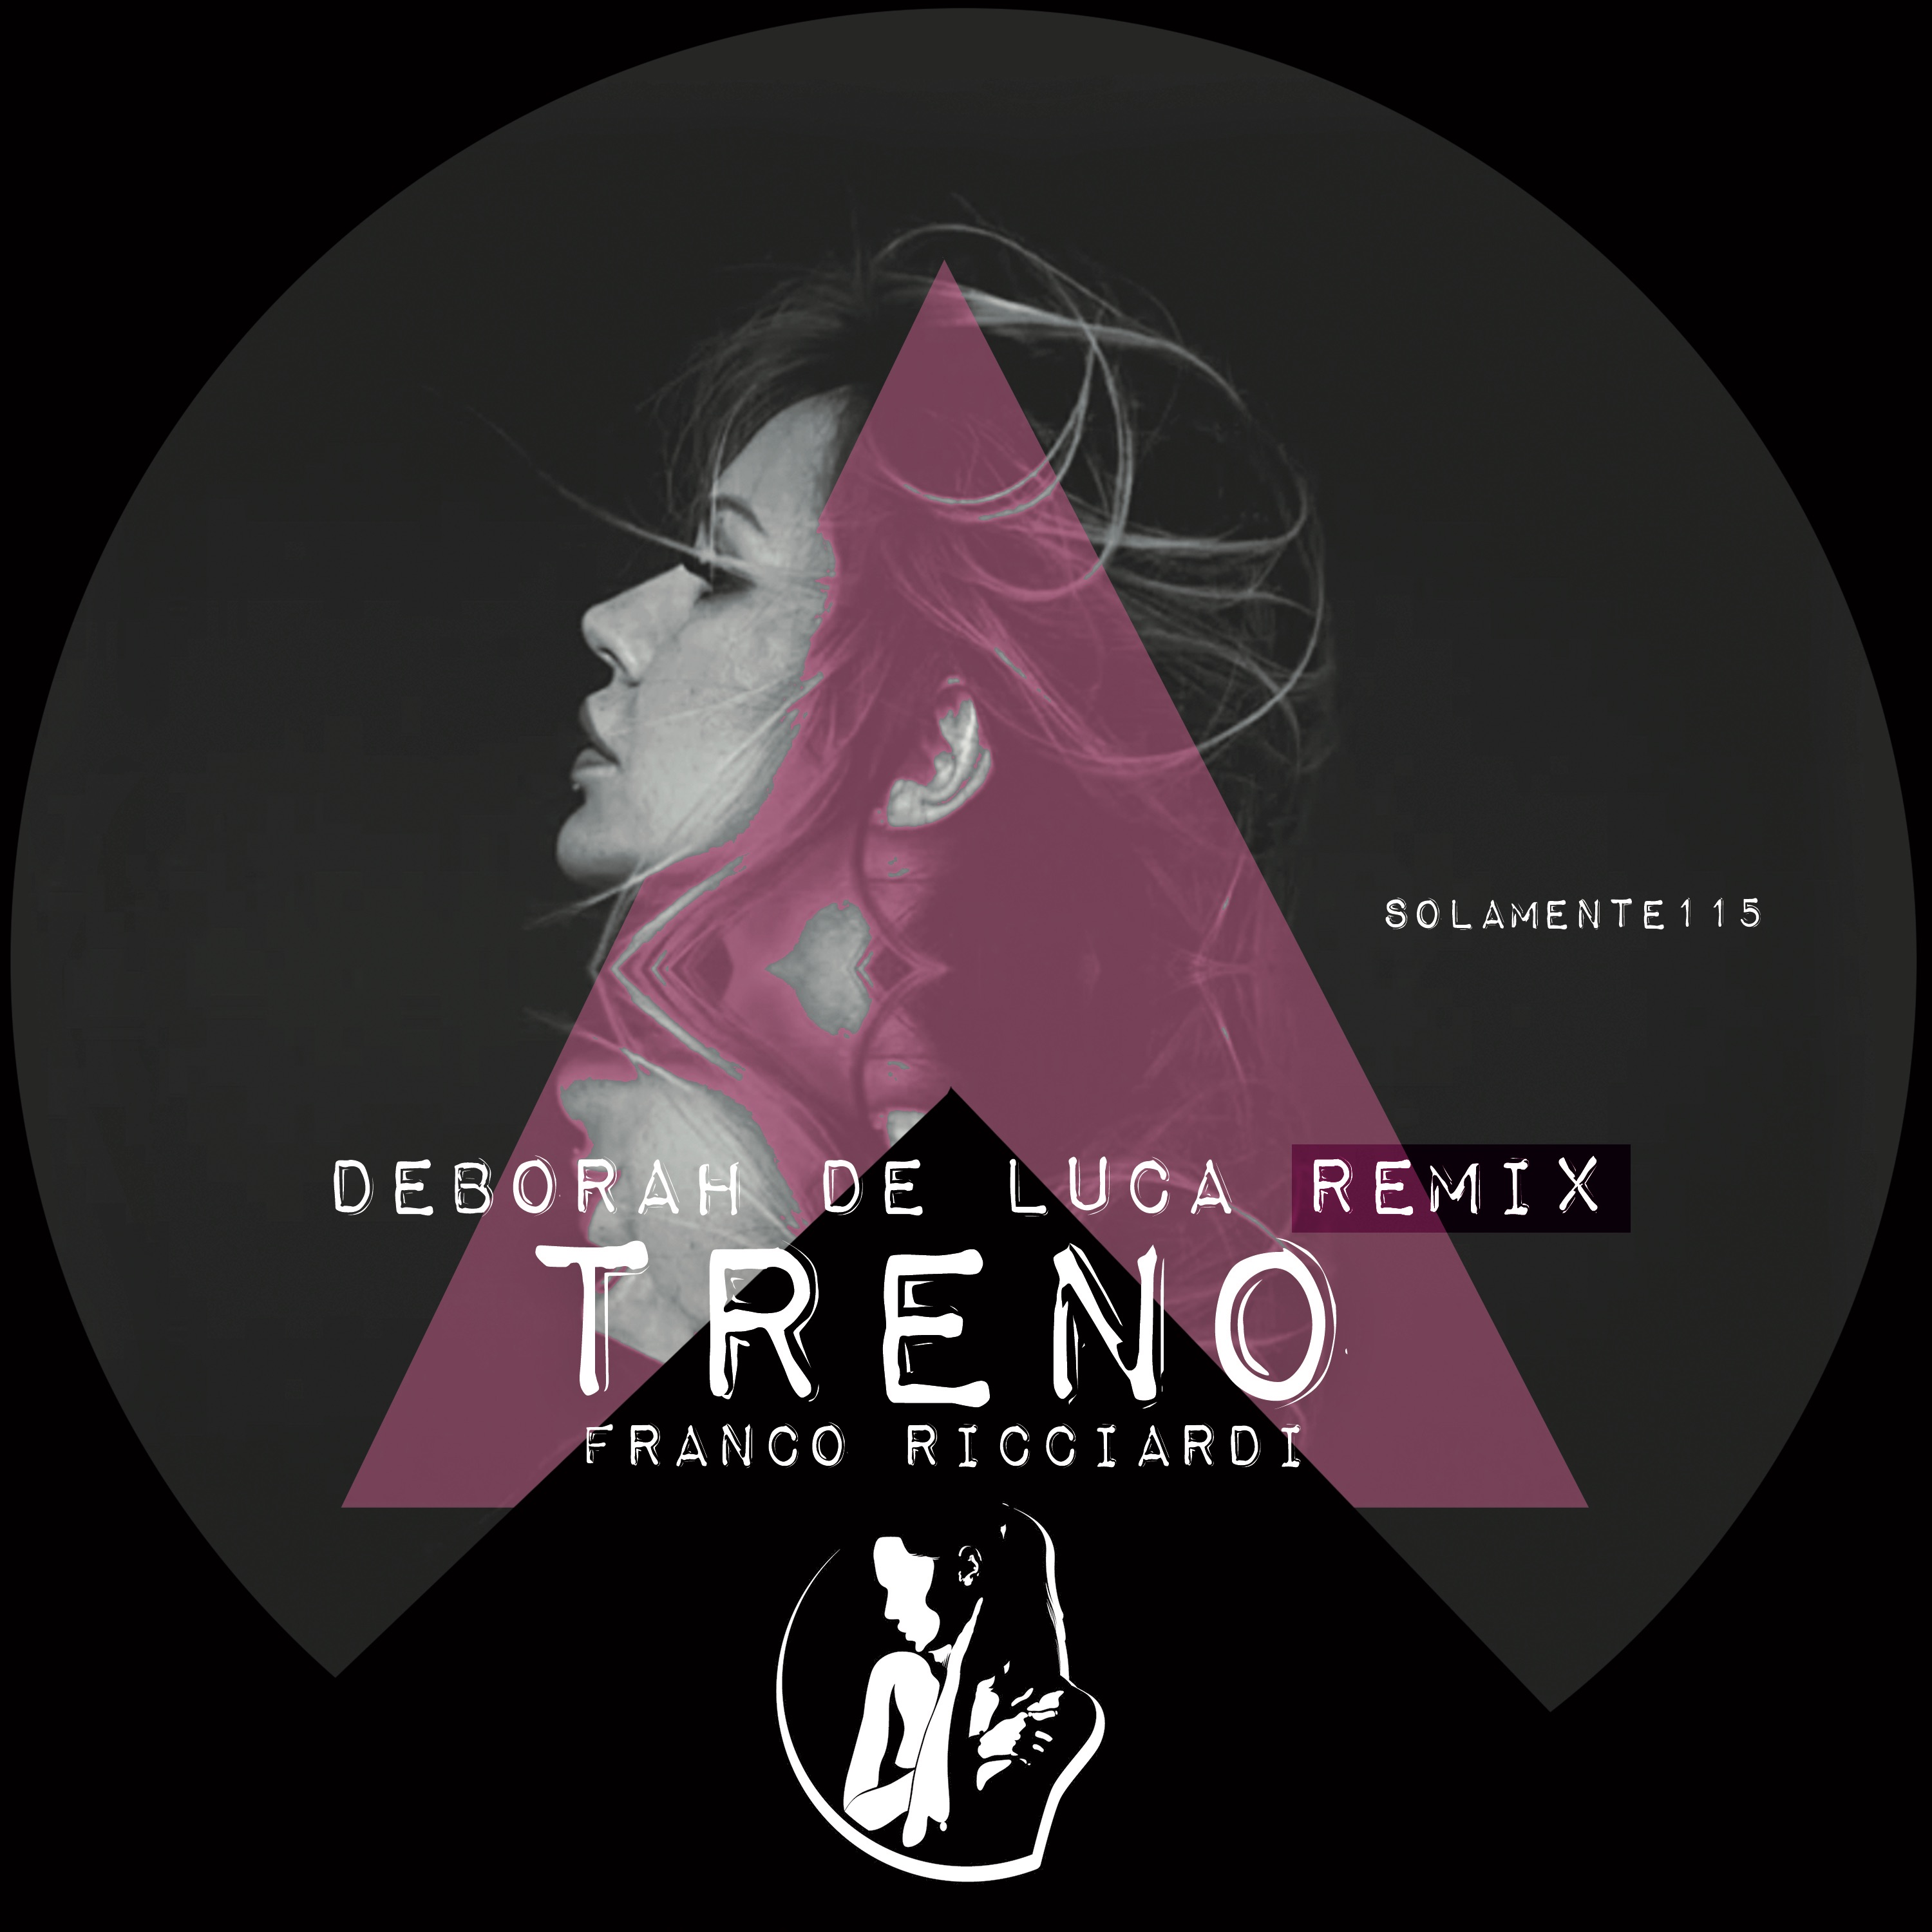 TRENO - Franco Ricciardi (Deborah De Luca Remix)